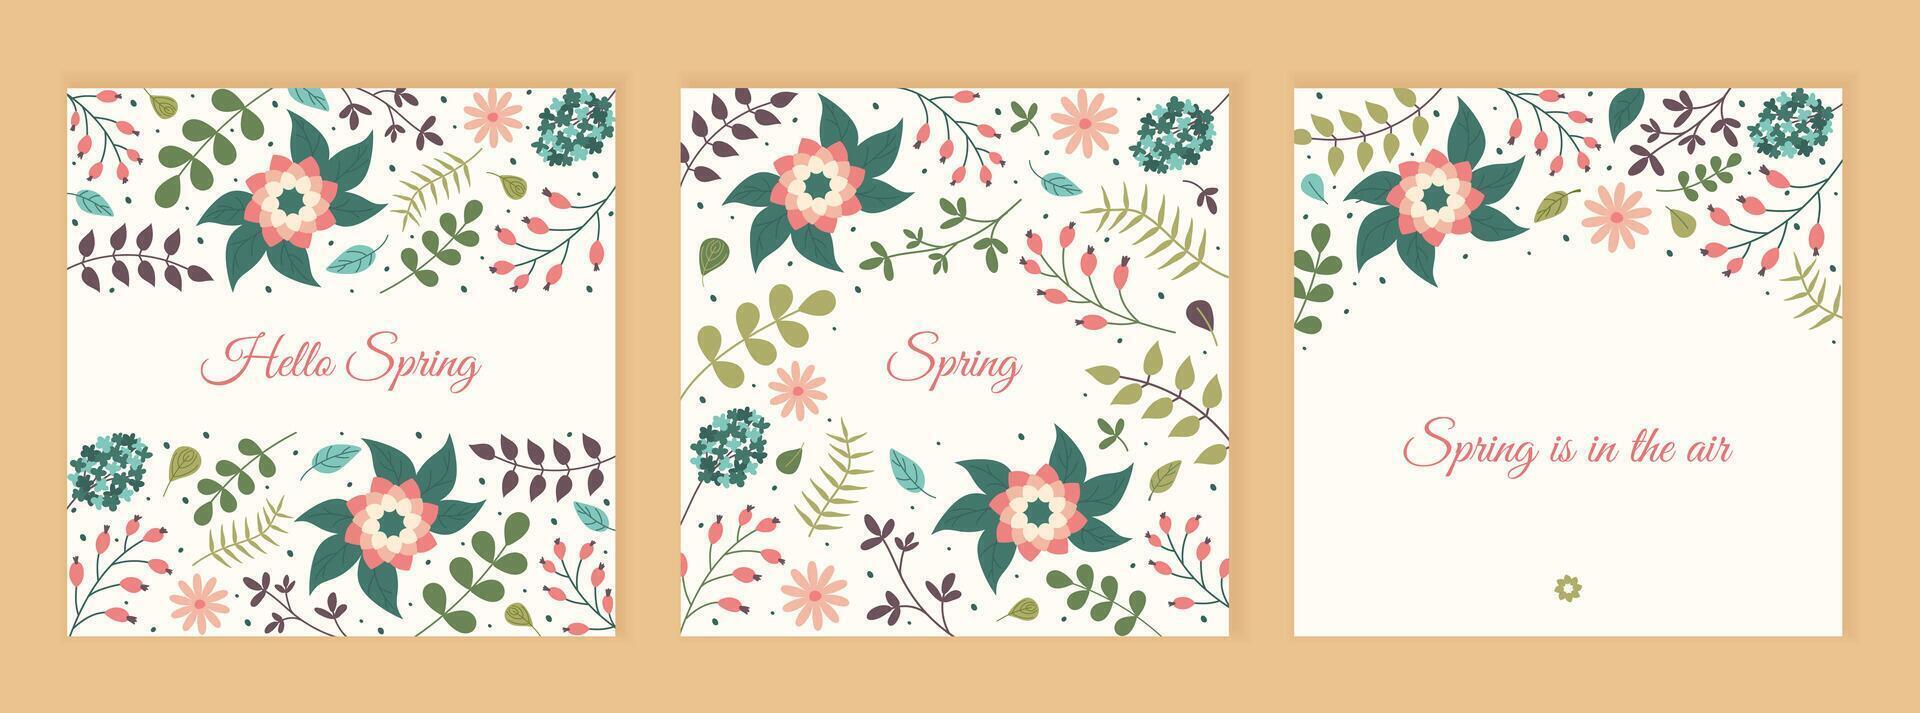 Hola primavera floral cuadrado carteles social medios de comunicación primavera enviar plantillas. conjunto de postales con hojas, flores y texto en pastel colores. minimalista estilo saludo tarjeta con botánico elementos. vector